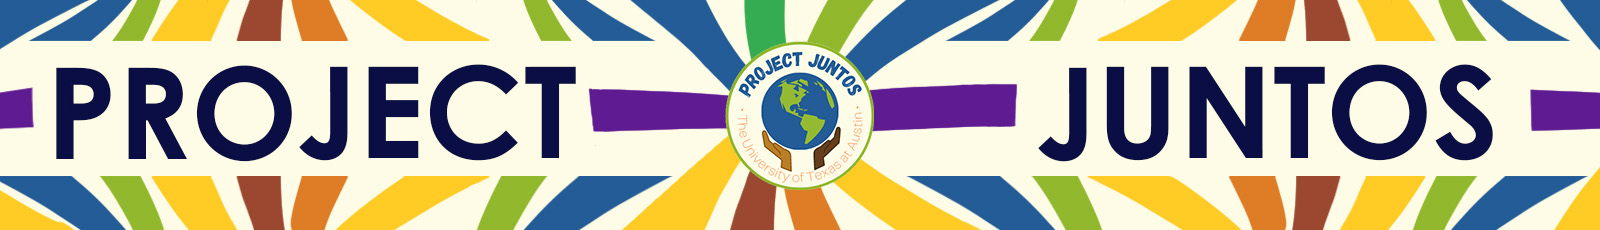 Project Juntos Header